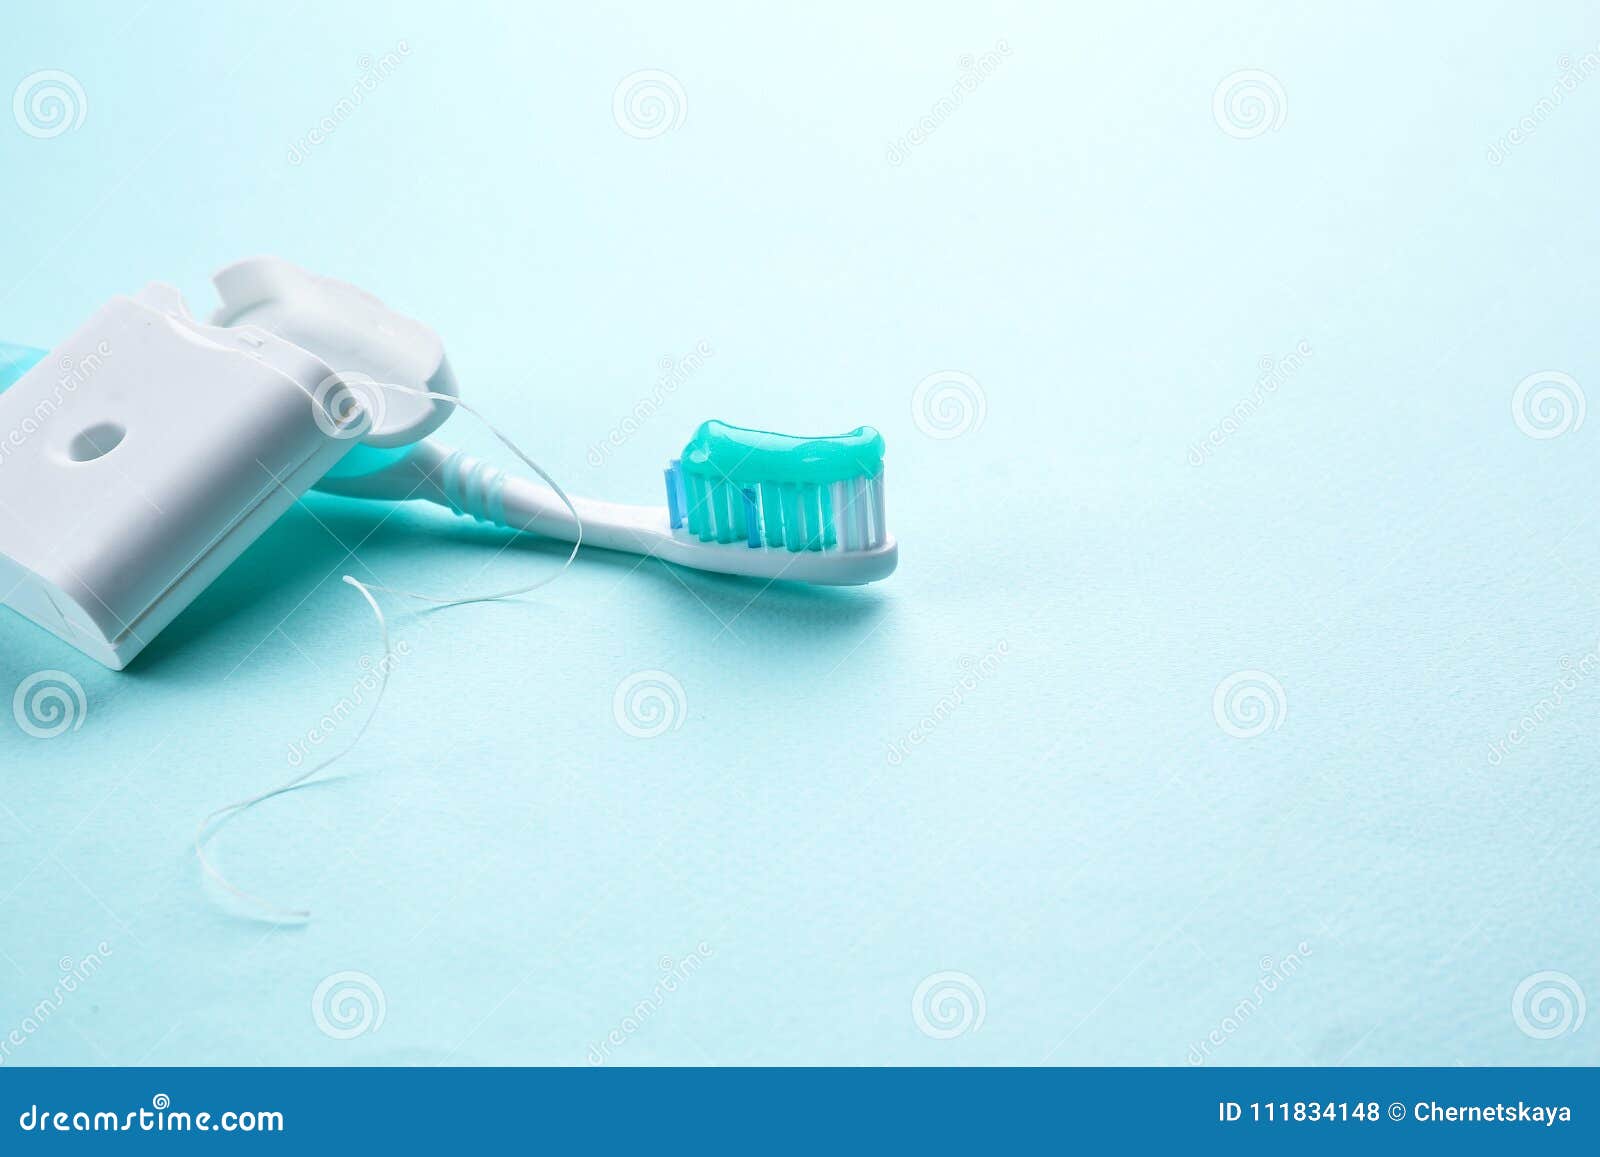 Чистить зубы без пасты. Зубная щетка зубная паста зубная нить зубочистка и ополаскиватели. Стоматолог с зубной нитью. Зубная щетка и паста картинки зубная нить. Бобер с щеточкой стоматология 2000х.